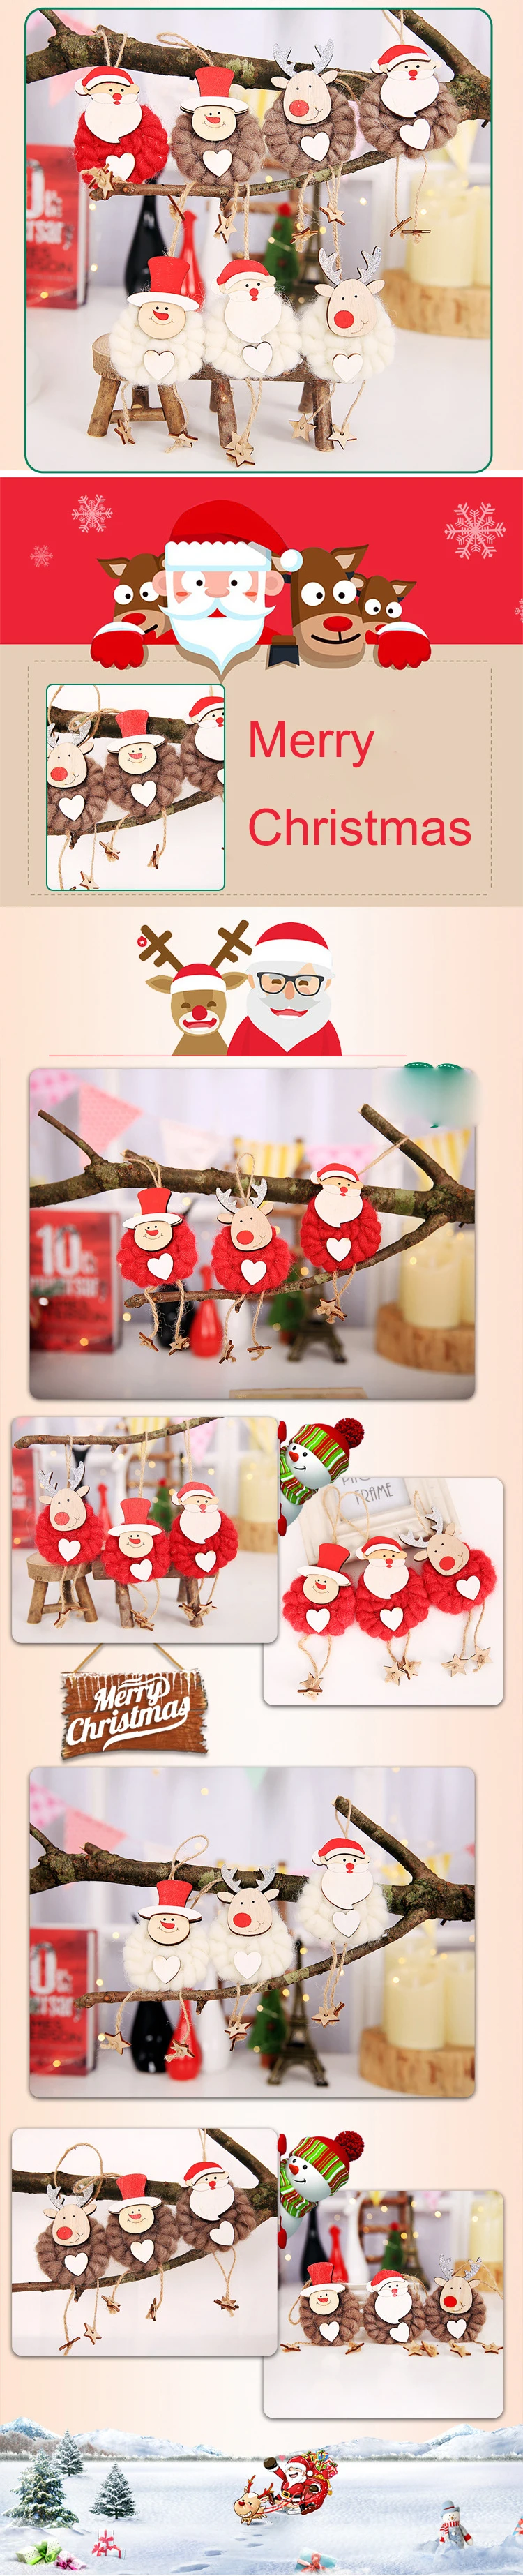 Игрушка Санта-Клаус для рождественской елки 3 шт рождественские украшения для стола новогодние 2020 рождественские украшения